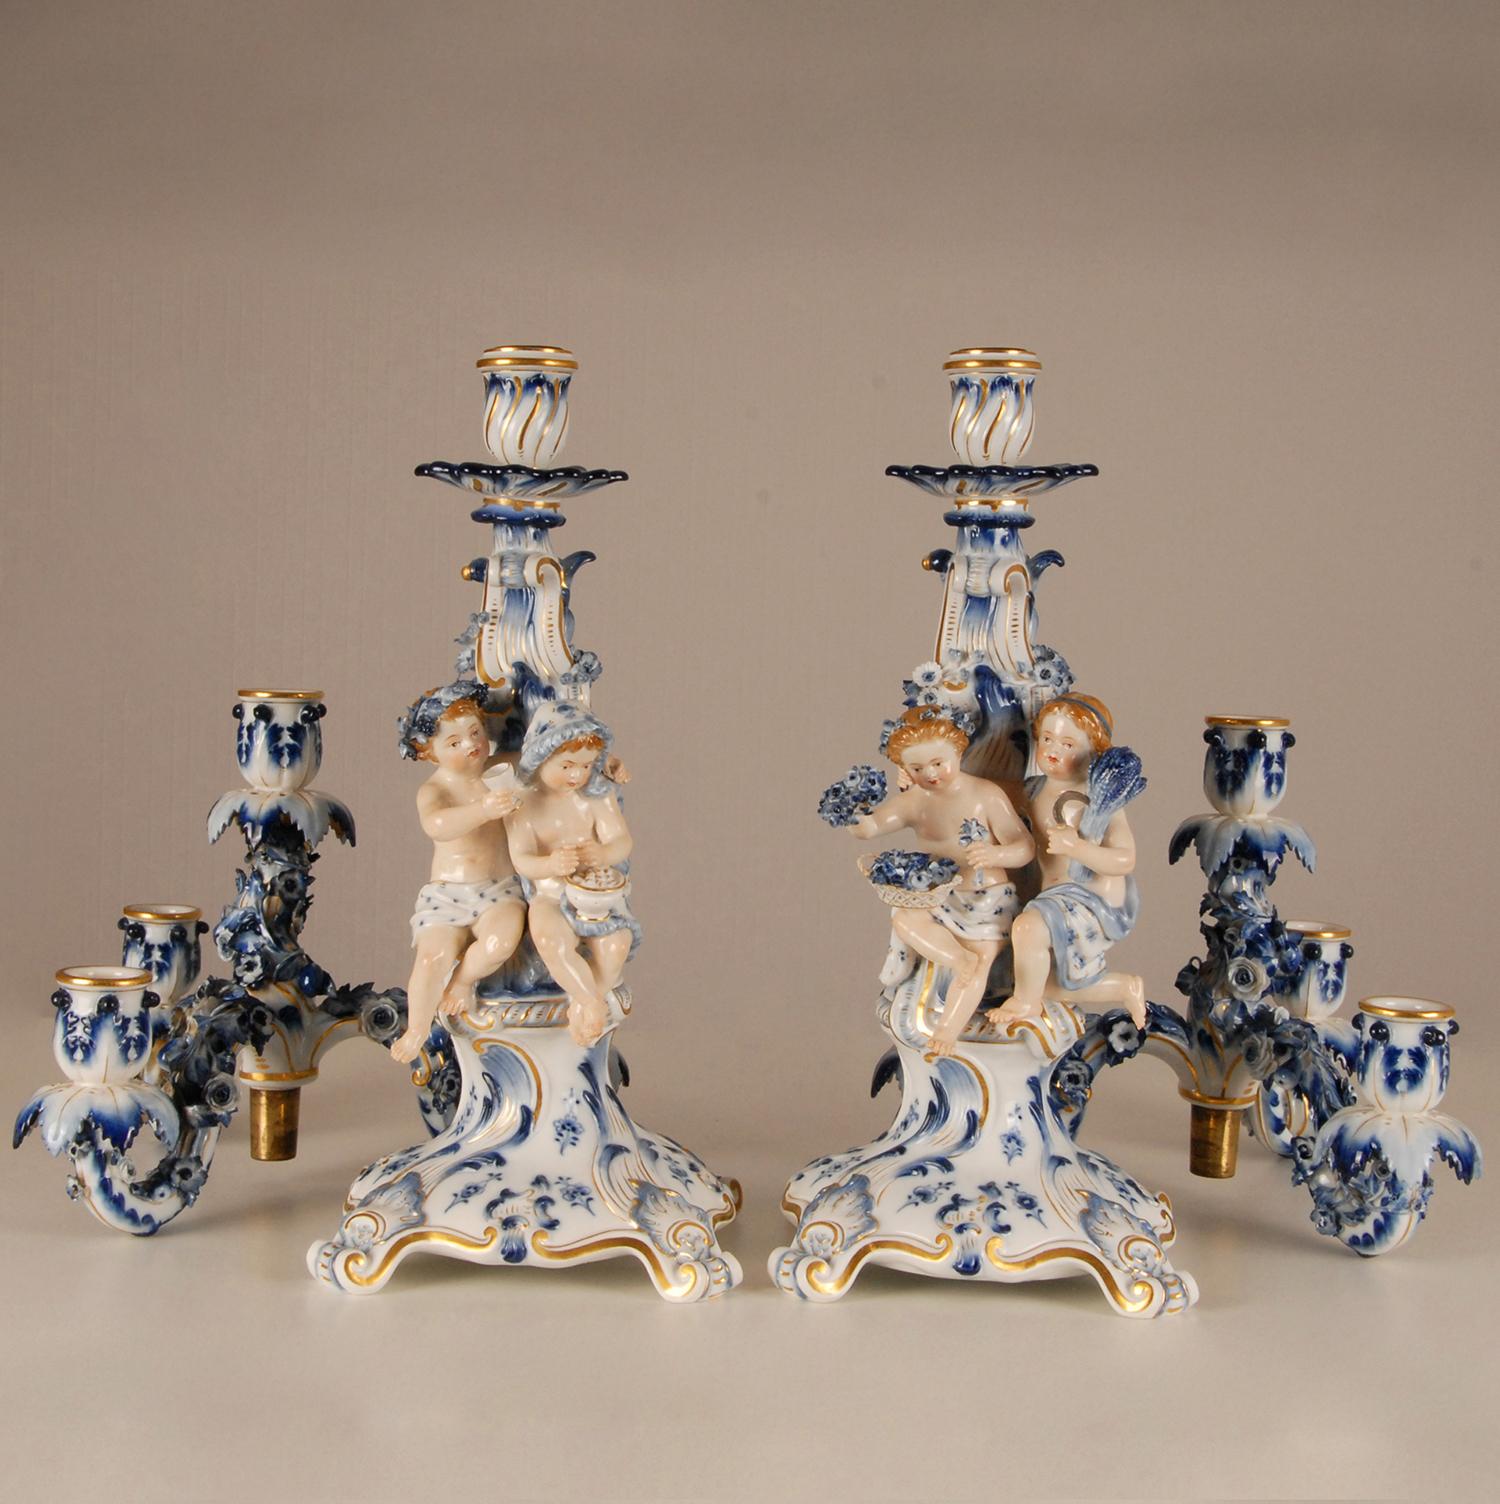 Chandeliers en porcelaine de Meissen porcelaine allemande ancienne - une paire
Chacun d'eux comporte 4 lumières et 2 personnages, emblématiques des quatre saisons.
Les candélabres sont fabriqués selon le motif bleu et blanc de l'Union
Très élaboré